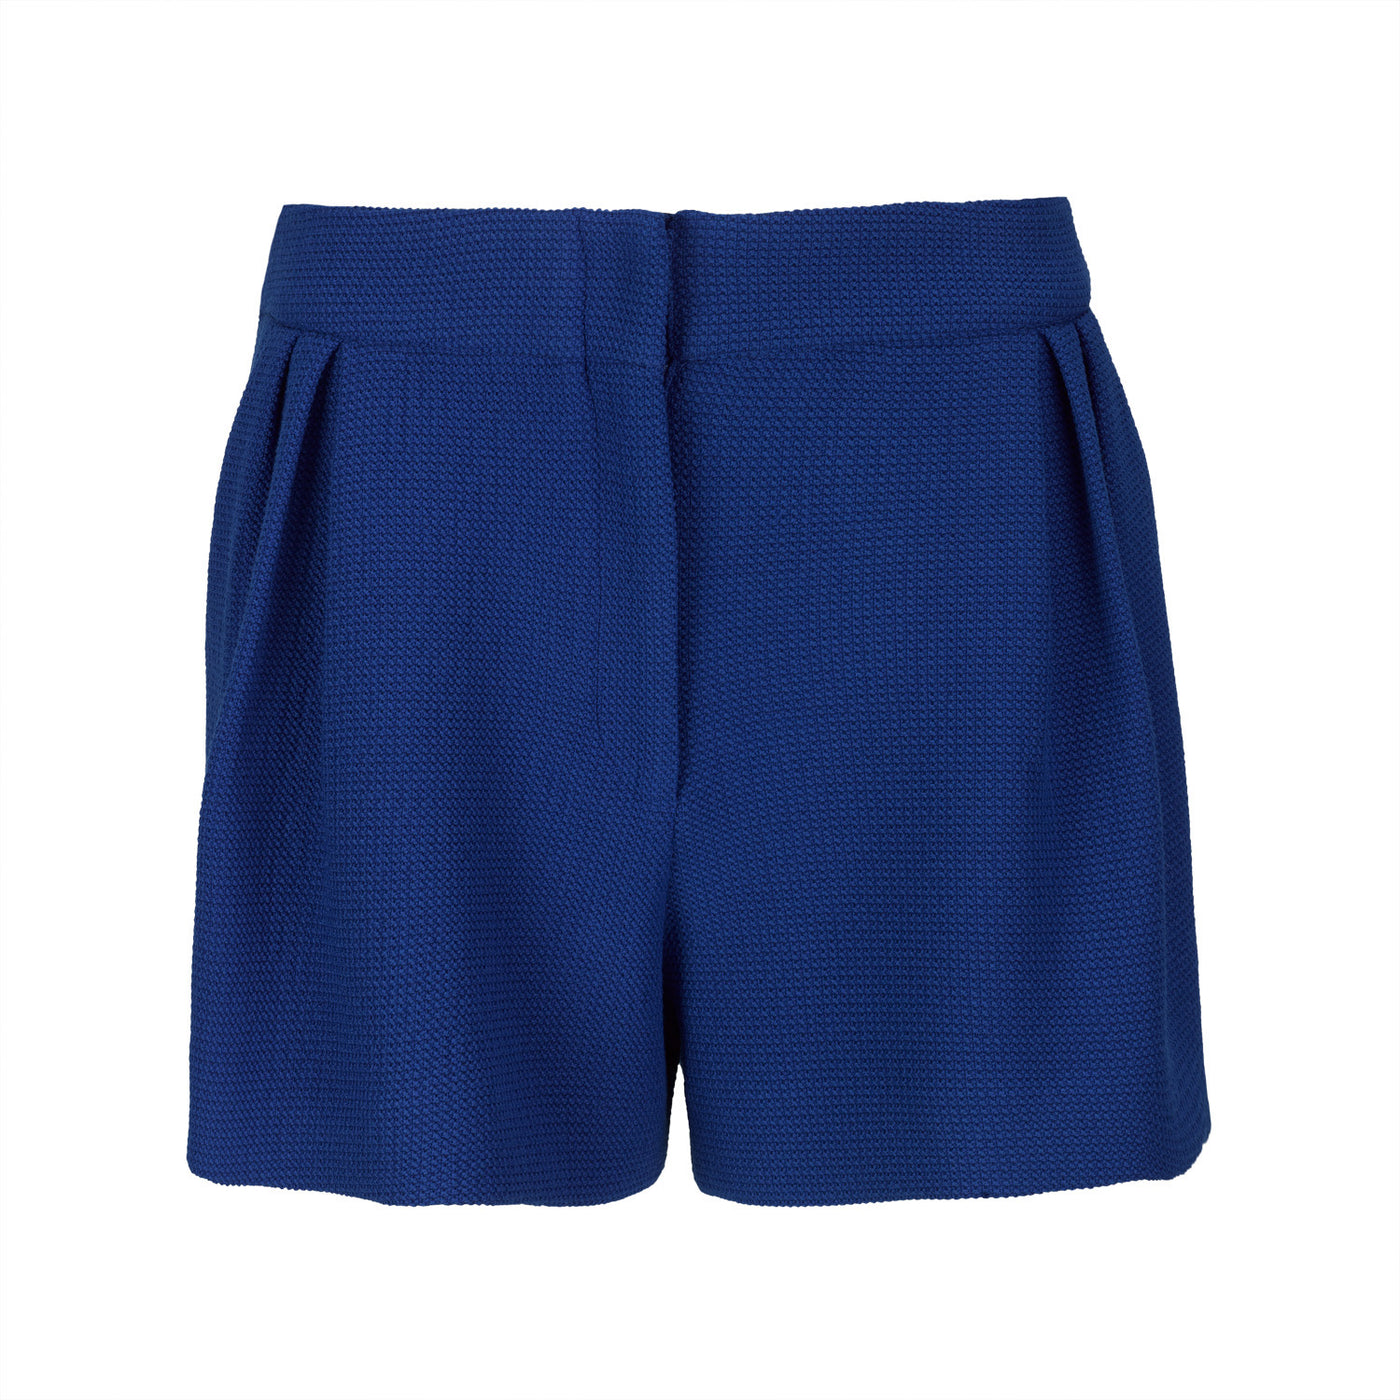 Blue Piqué Knit Shorts with Pleats